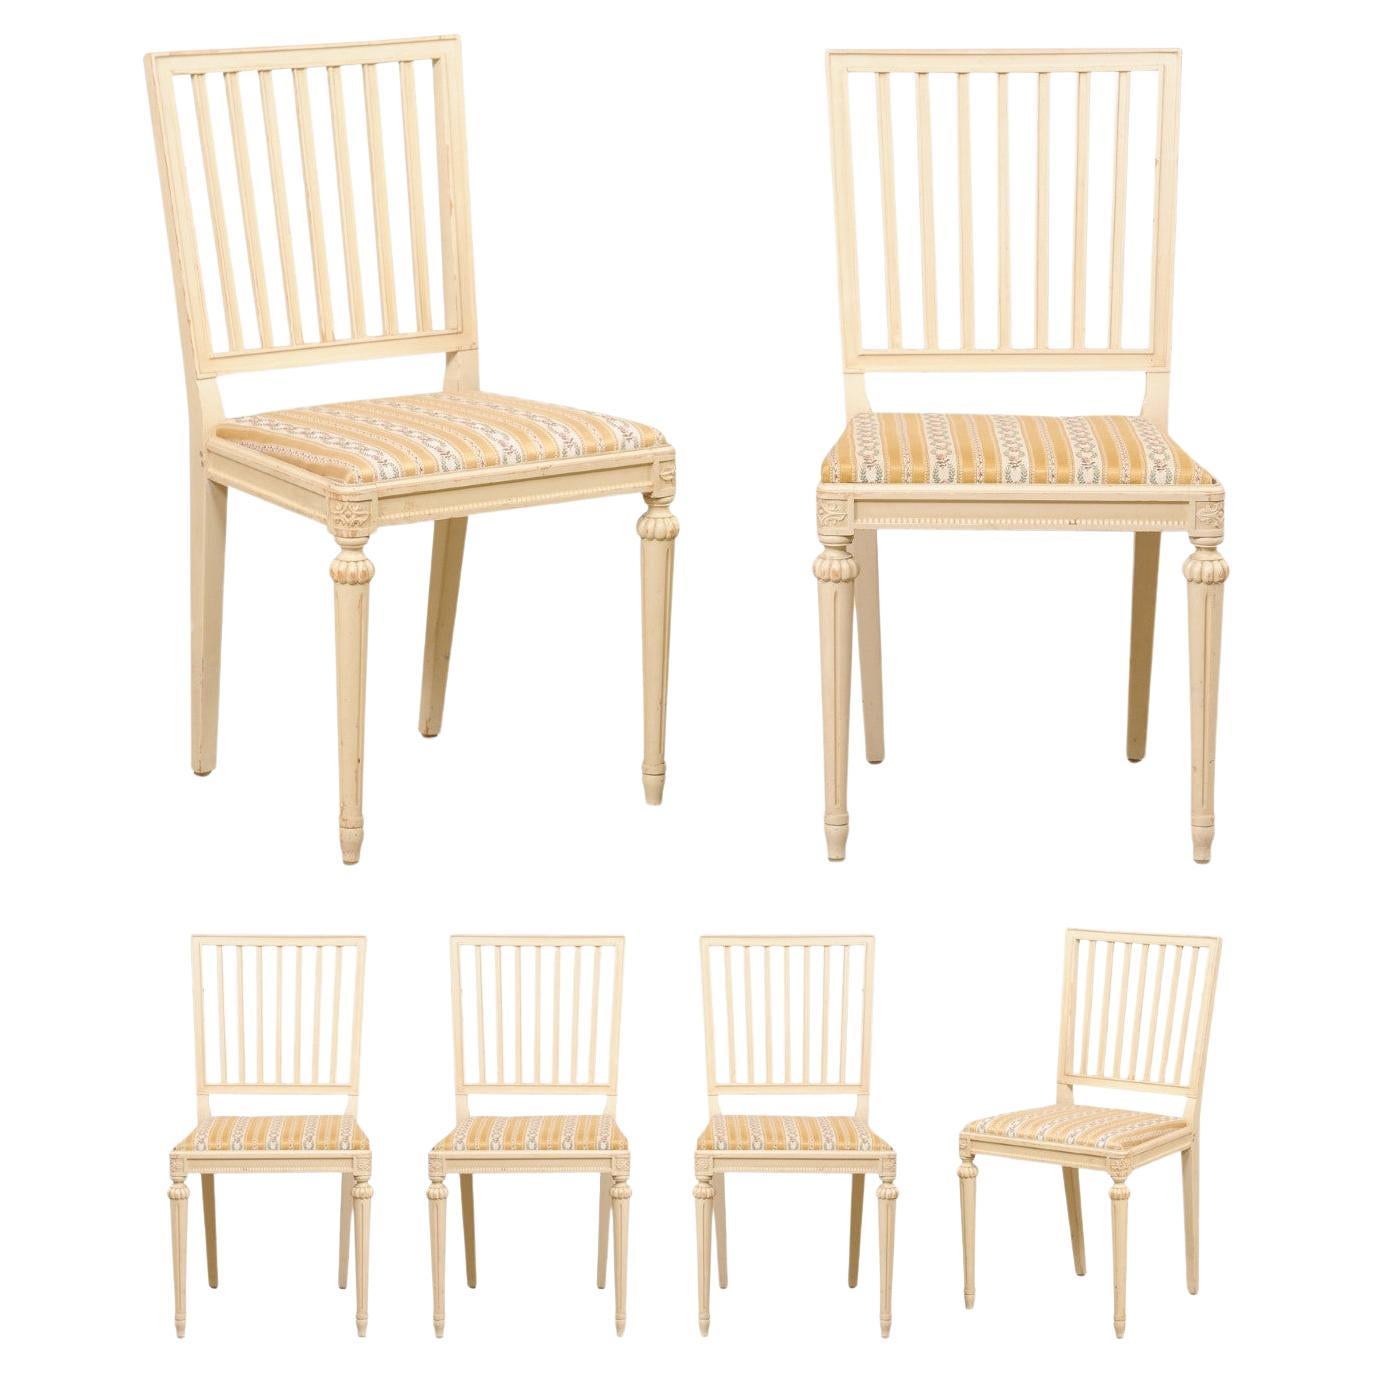 Schwedischer Satz von sechs geschnitzten Holz-Beistellstühlen mit gepolsterten Sitzen, cremefarben lackiert